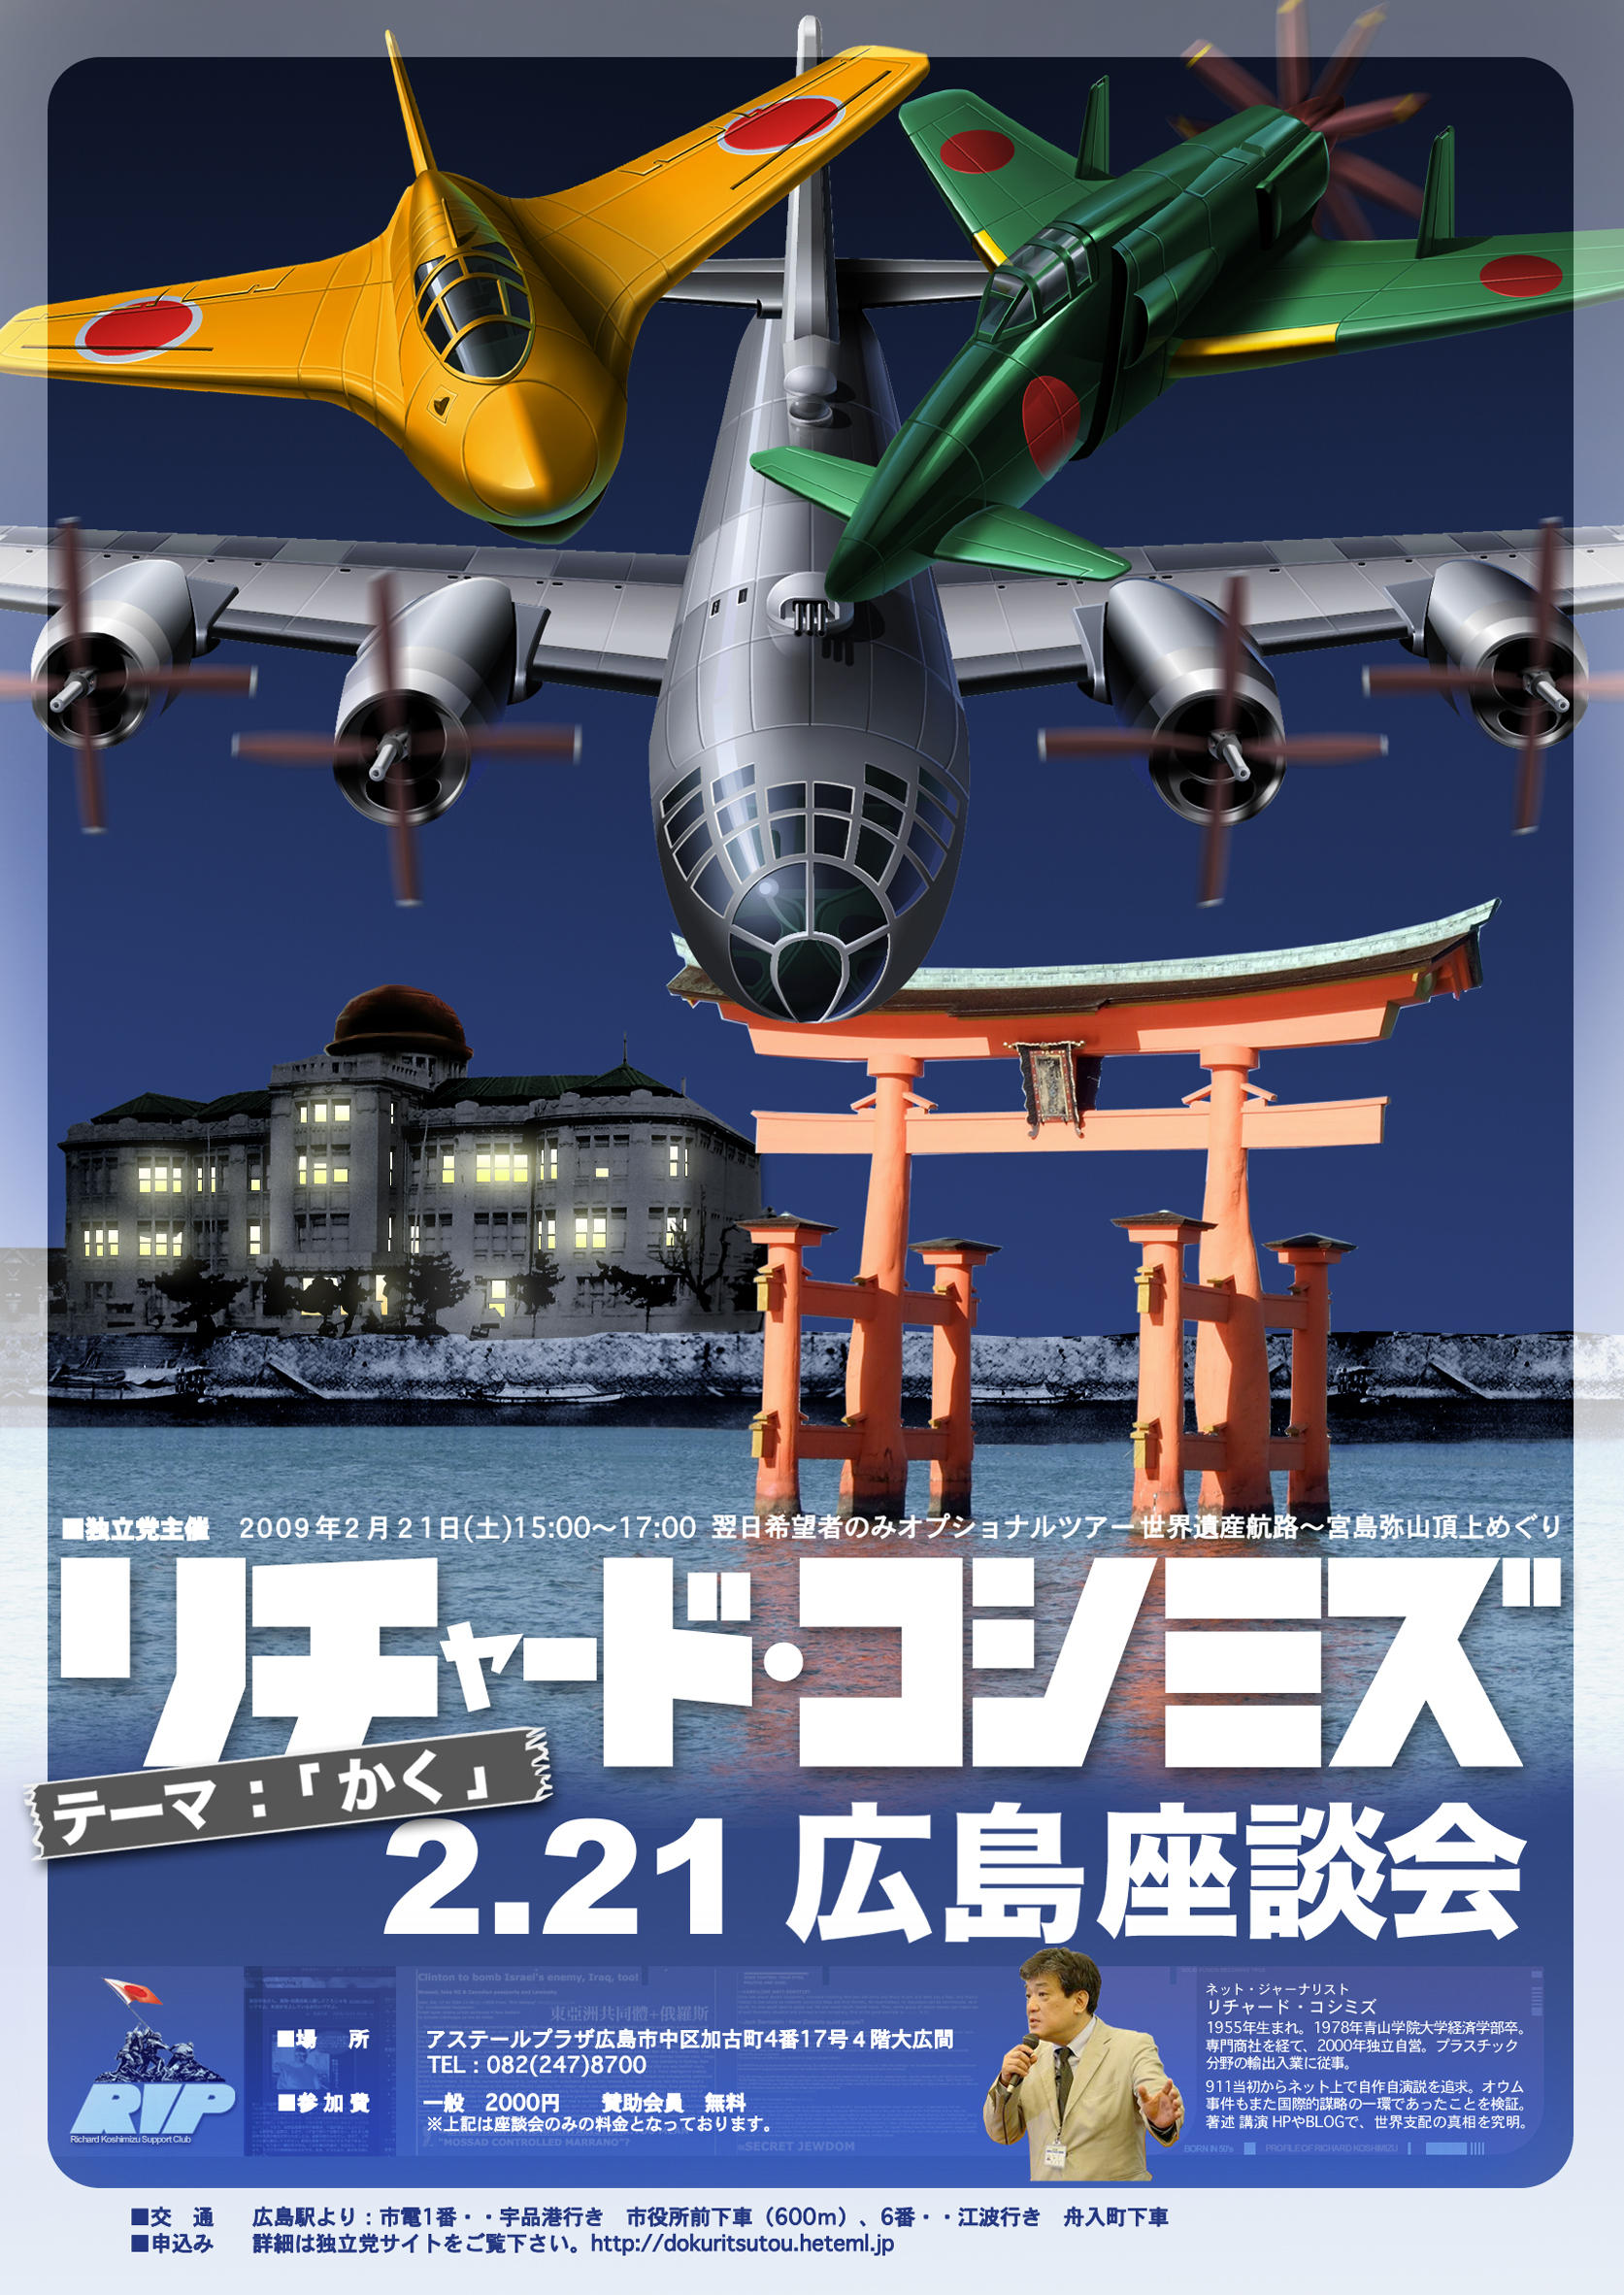 2.21広島座談会ポスターです。